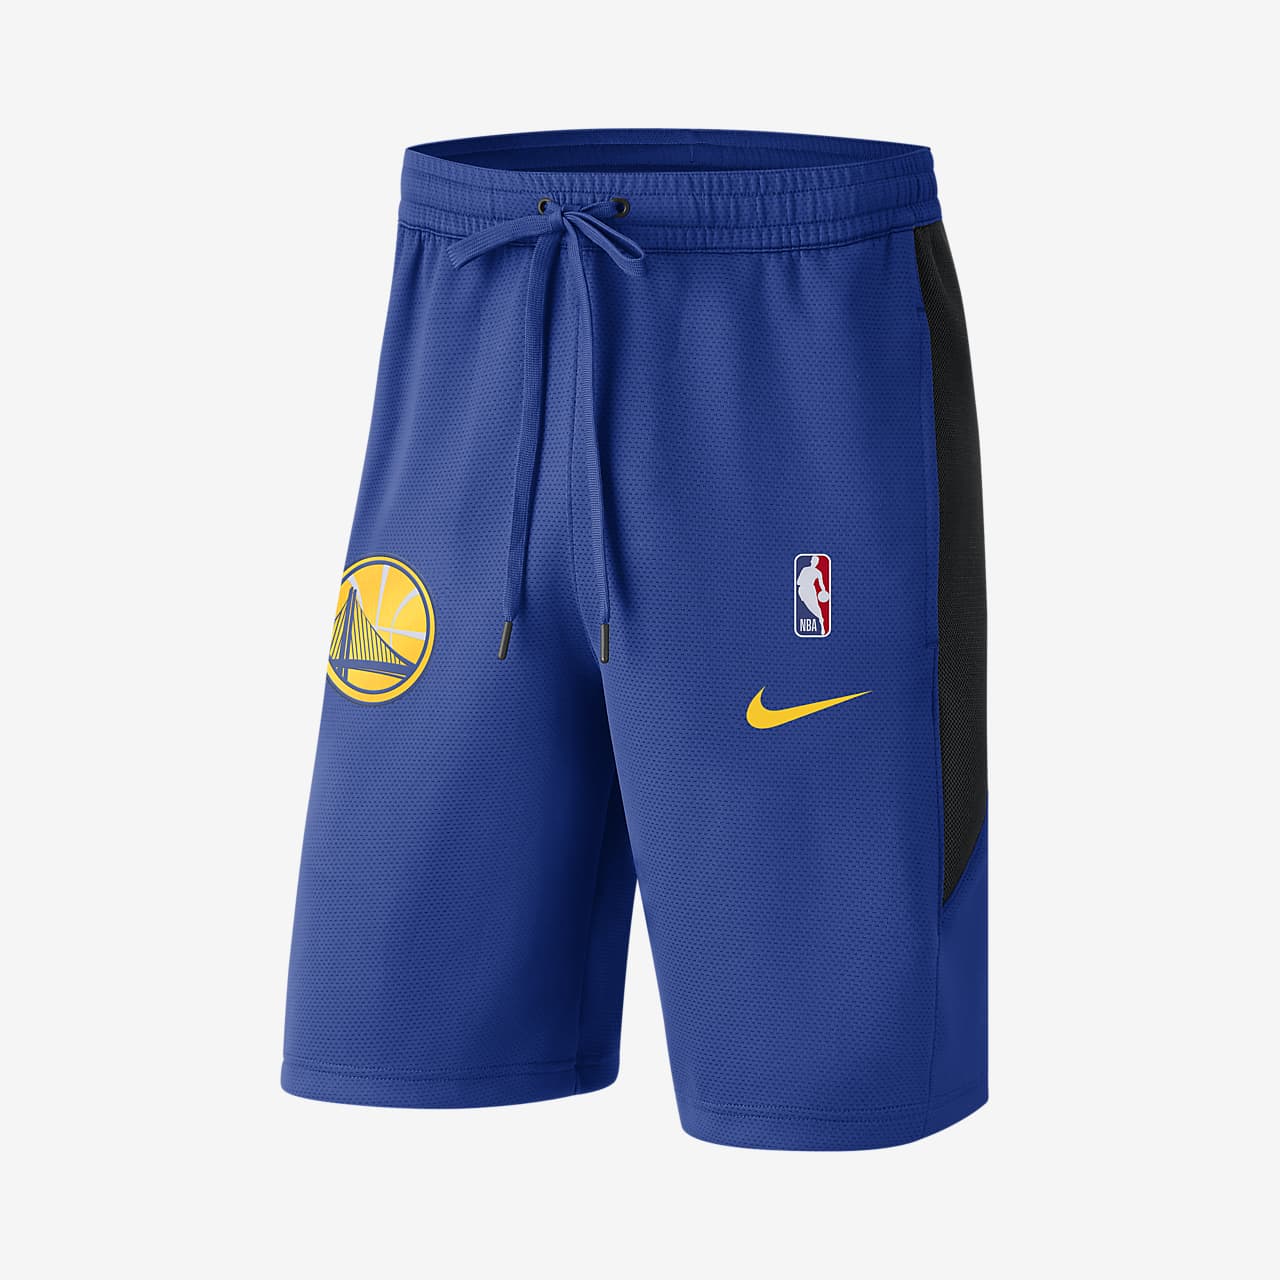 Shorts de la NBA para hombre Golden State Warriors Nike Therma Flex. Nike .com